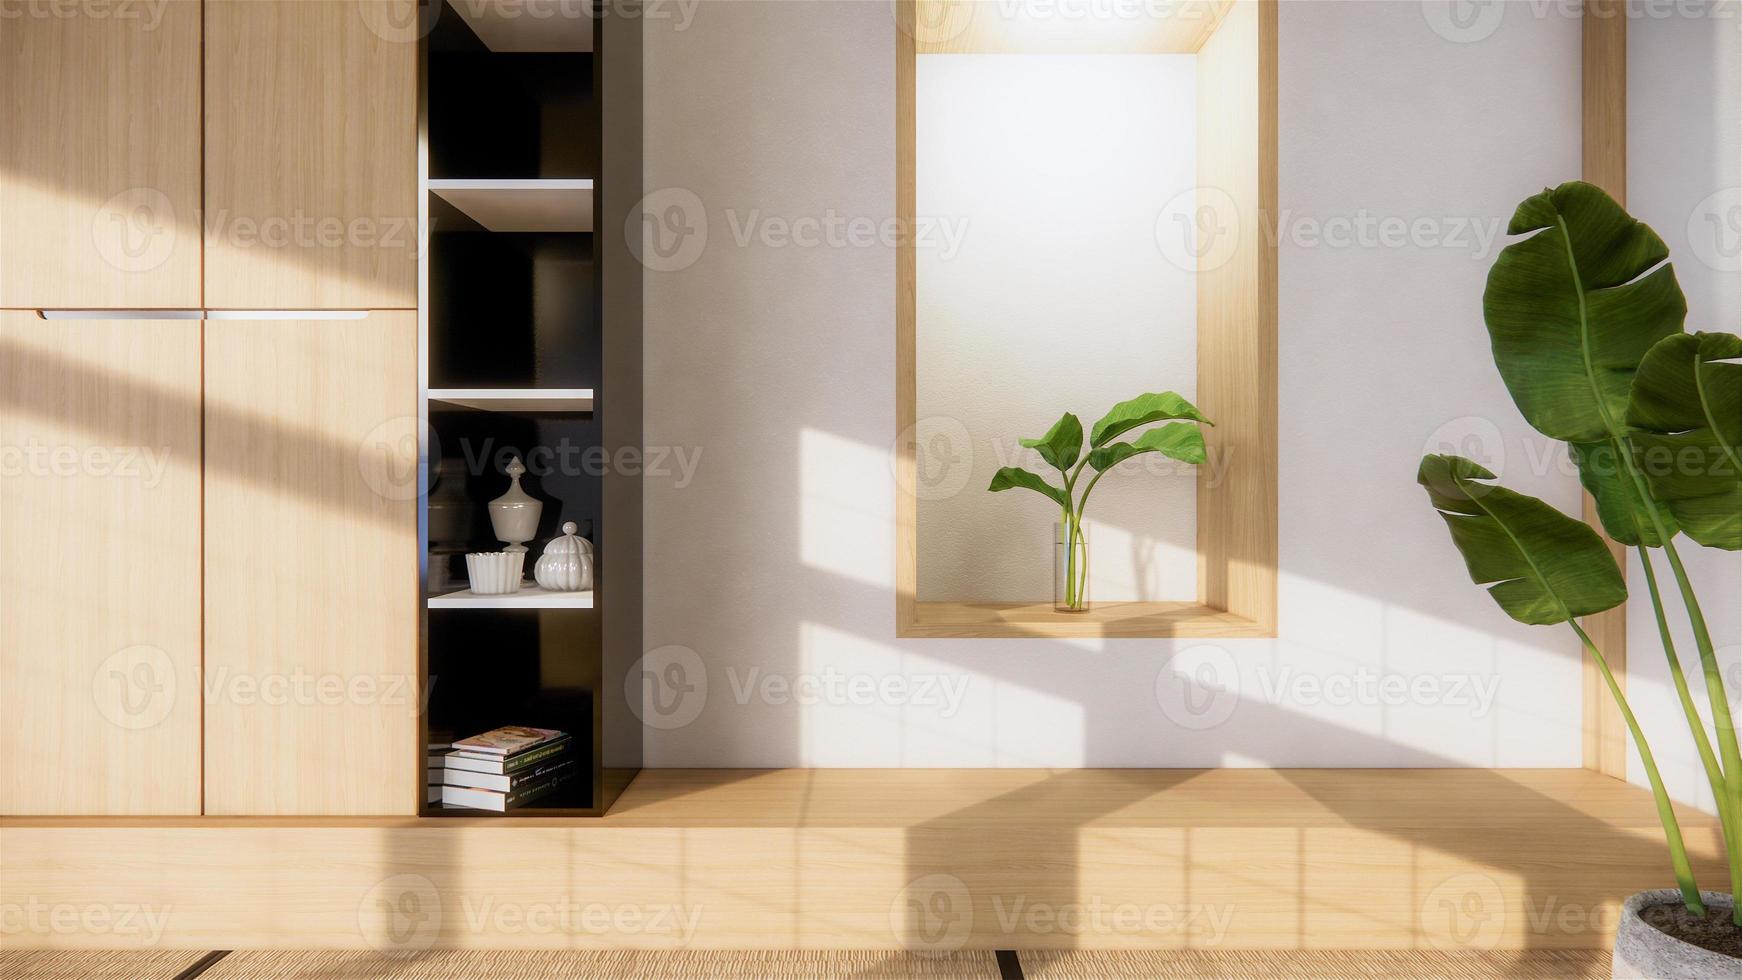 gabinete de tv e prateleira com design zen interior da sala de estar estilo japonês. Renderização 3D foto